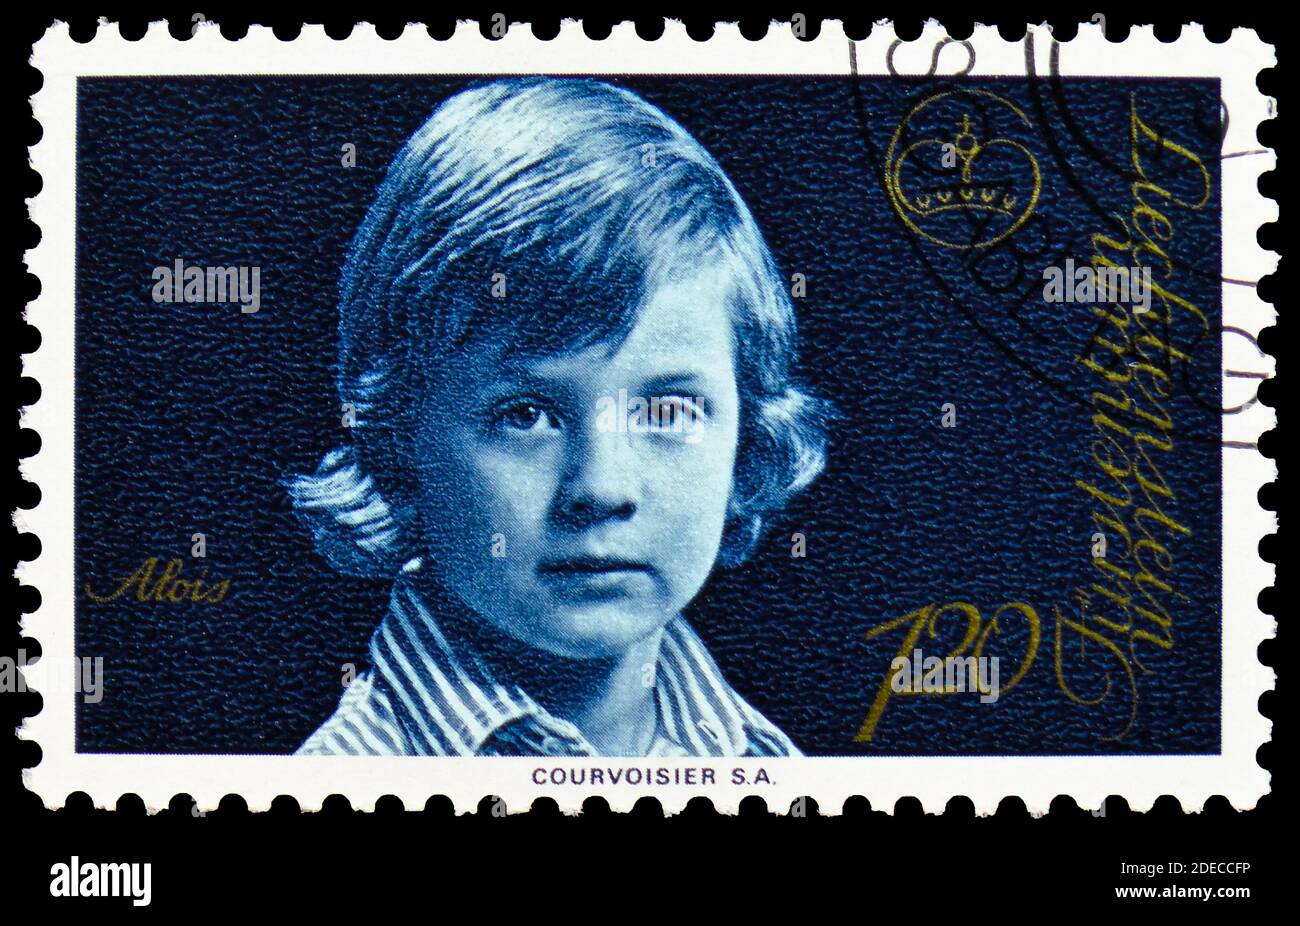 MOSCOU, RUSSIE - 17 OCTOBRE 2020 : timbre-poste imprimé au Liechtenstein montre le Prince Alois, Princes et princesses série, vers 1975 Banque D'Images